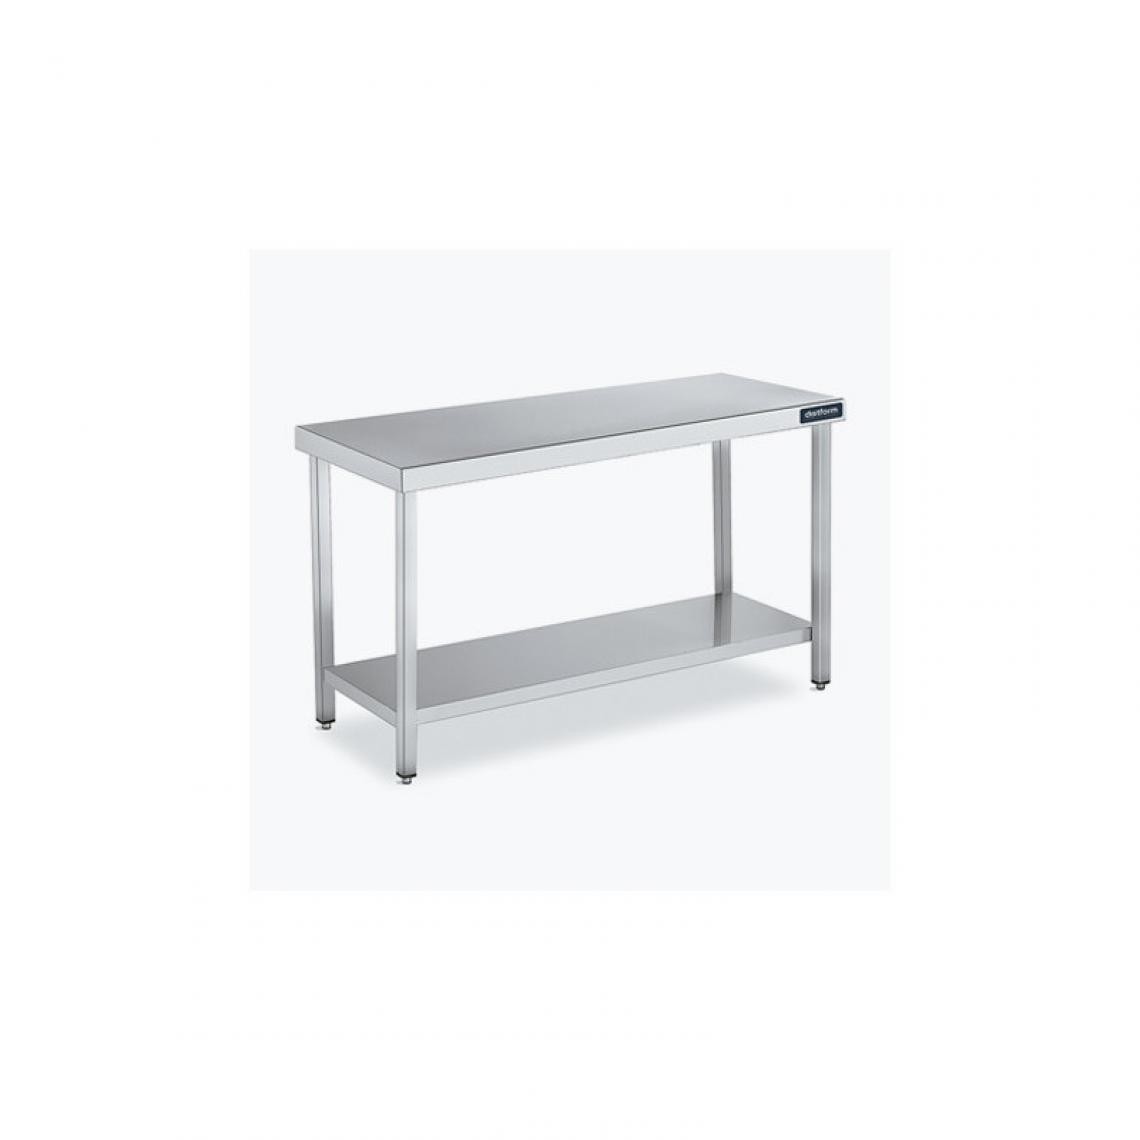 DISTFORM - Table Centrale 600x600 avec Étagère - Distform - Inox 18/10800x600x850mm - Tables à manger